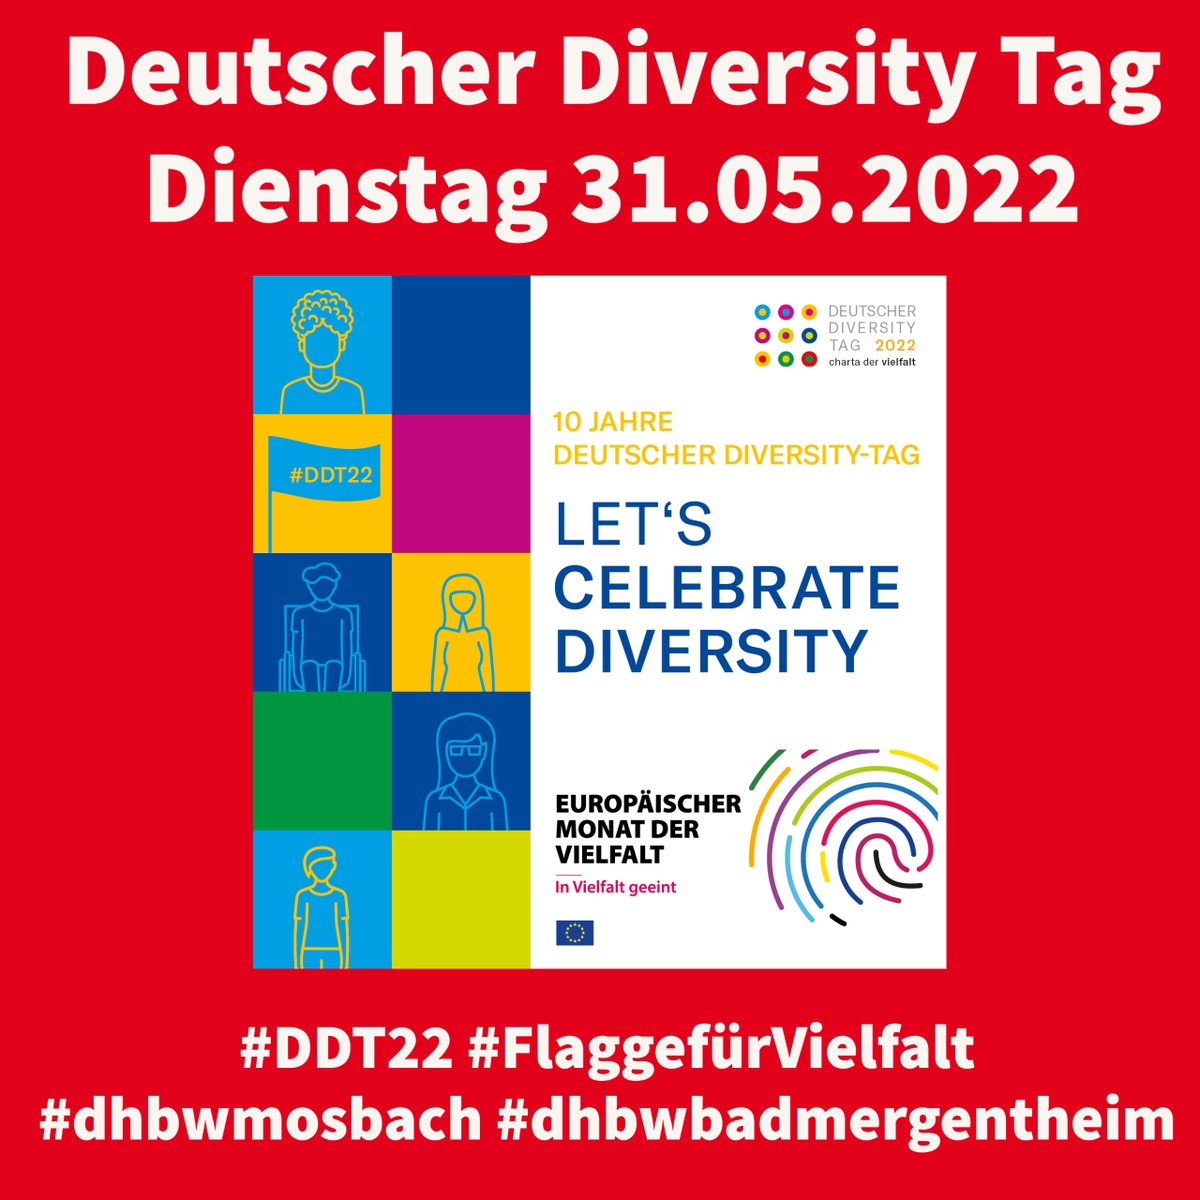 #DHBW #Mosbach/#BadMergentheim - Deutscher Diversity Tag 2022. Online Session #3 zum Thema Diversity bei der #Bechtle AG. Wir freuen und über alle Teilnehmer*innen.
#CelebrateDiversity #DDT22 #FlaggefürVielfalt #diversity